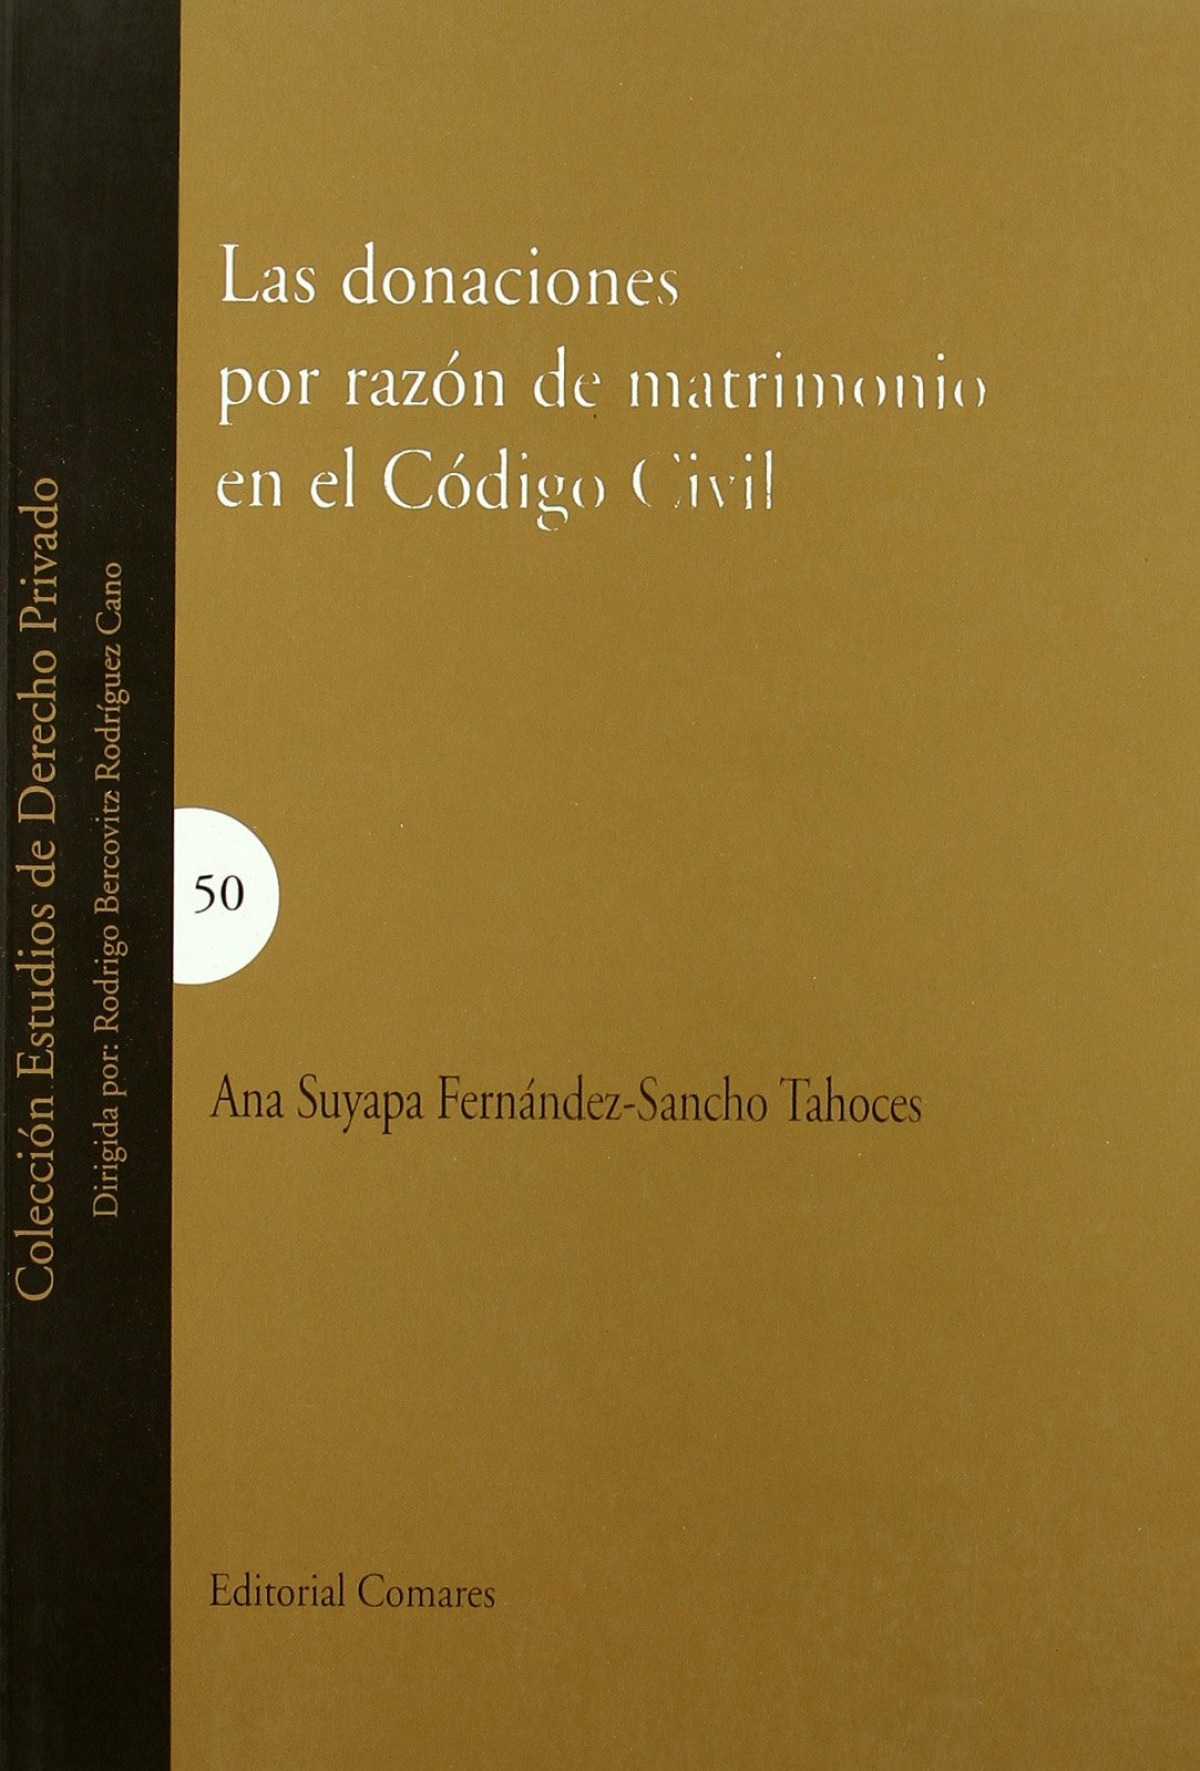 Las donaciones por razón de matrimonio en el Código Civil - Fernández-Sancho Tahoces, Ana Suyapa